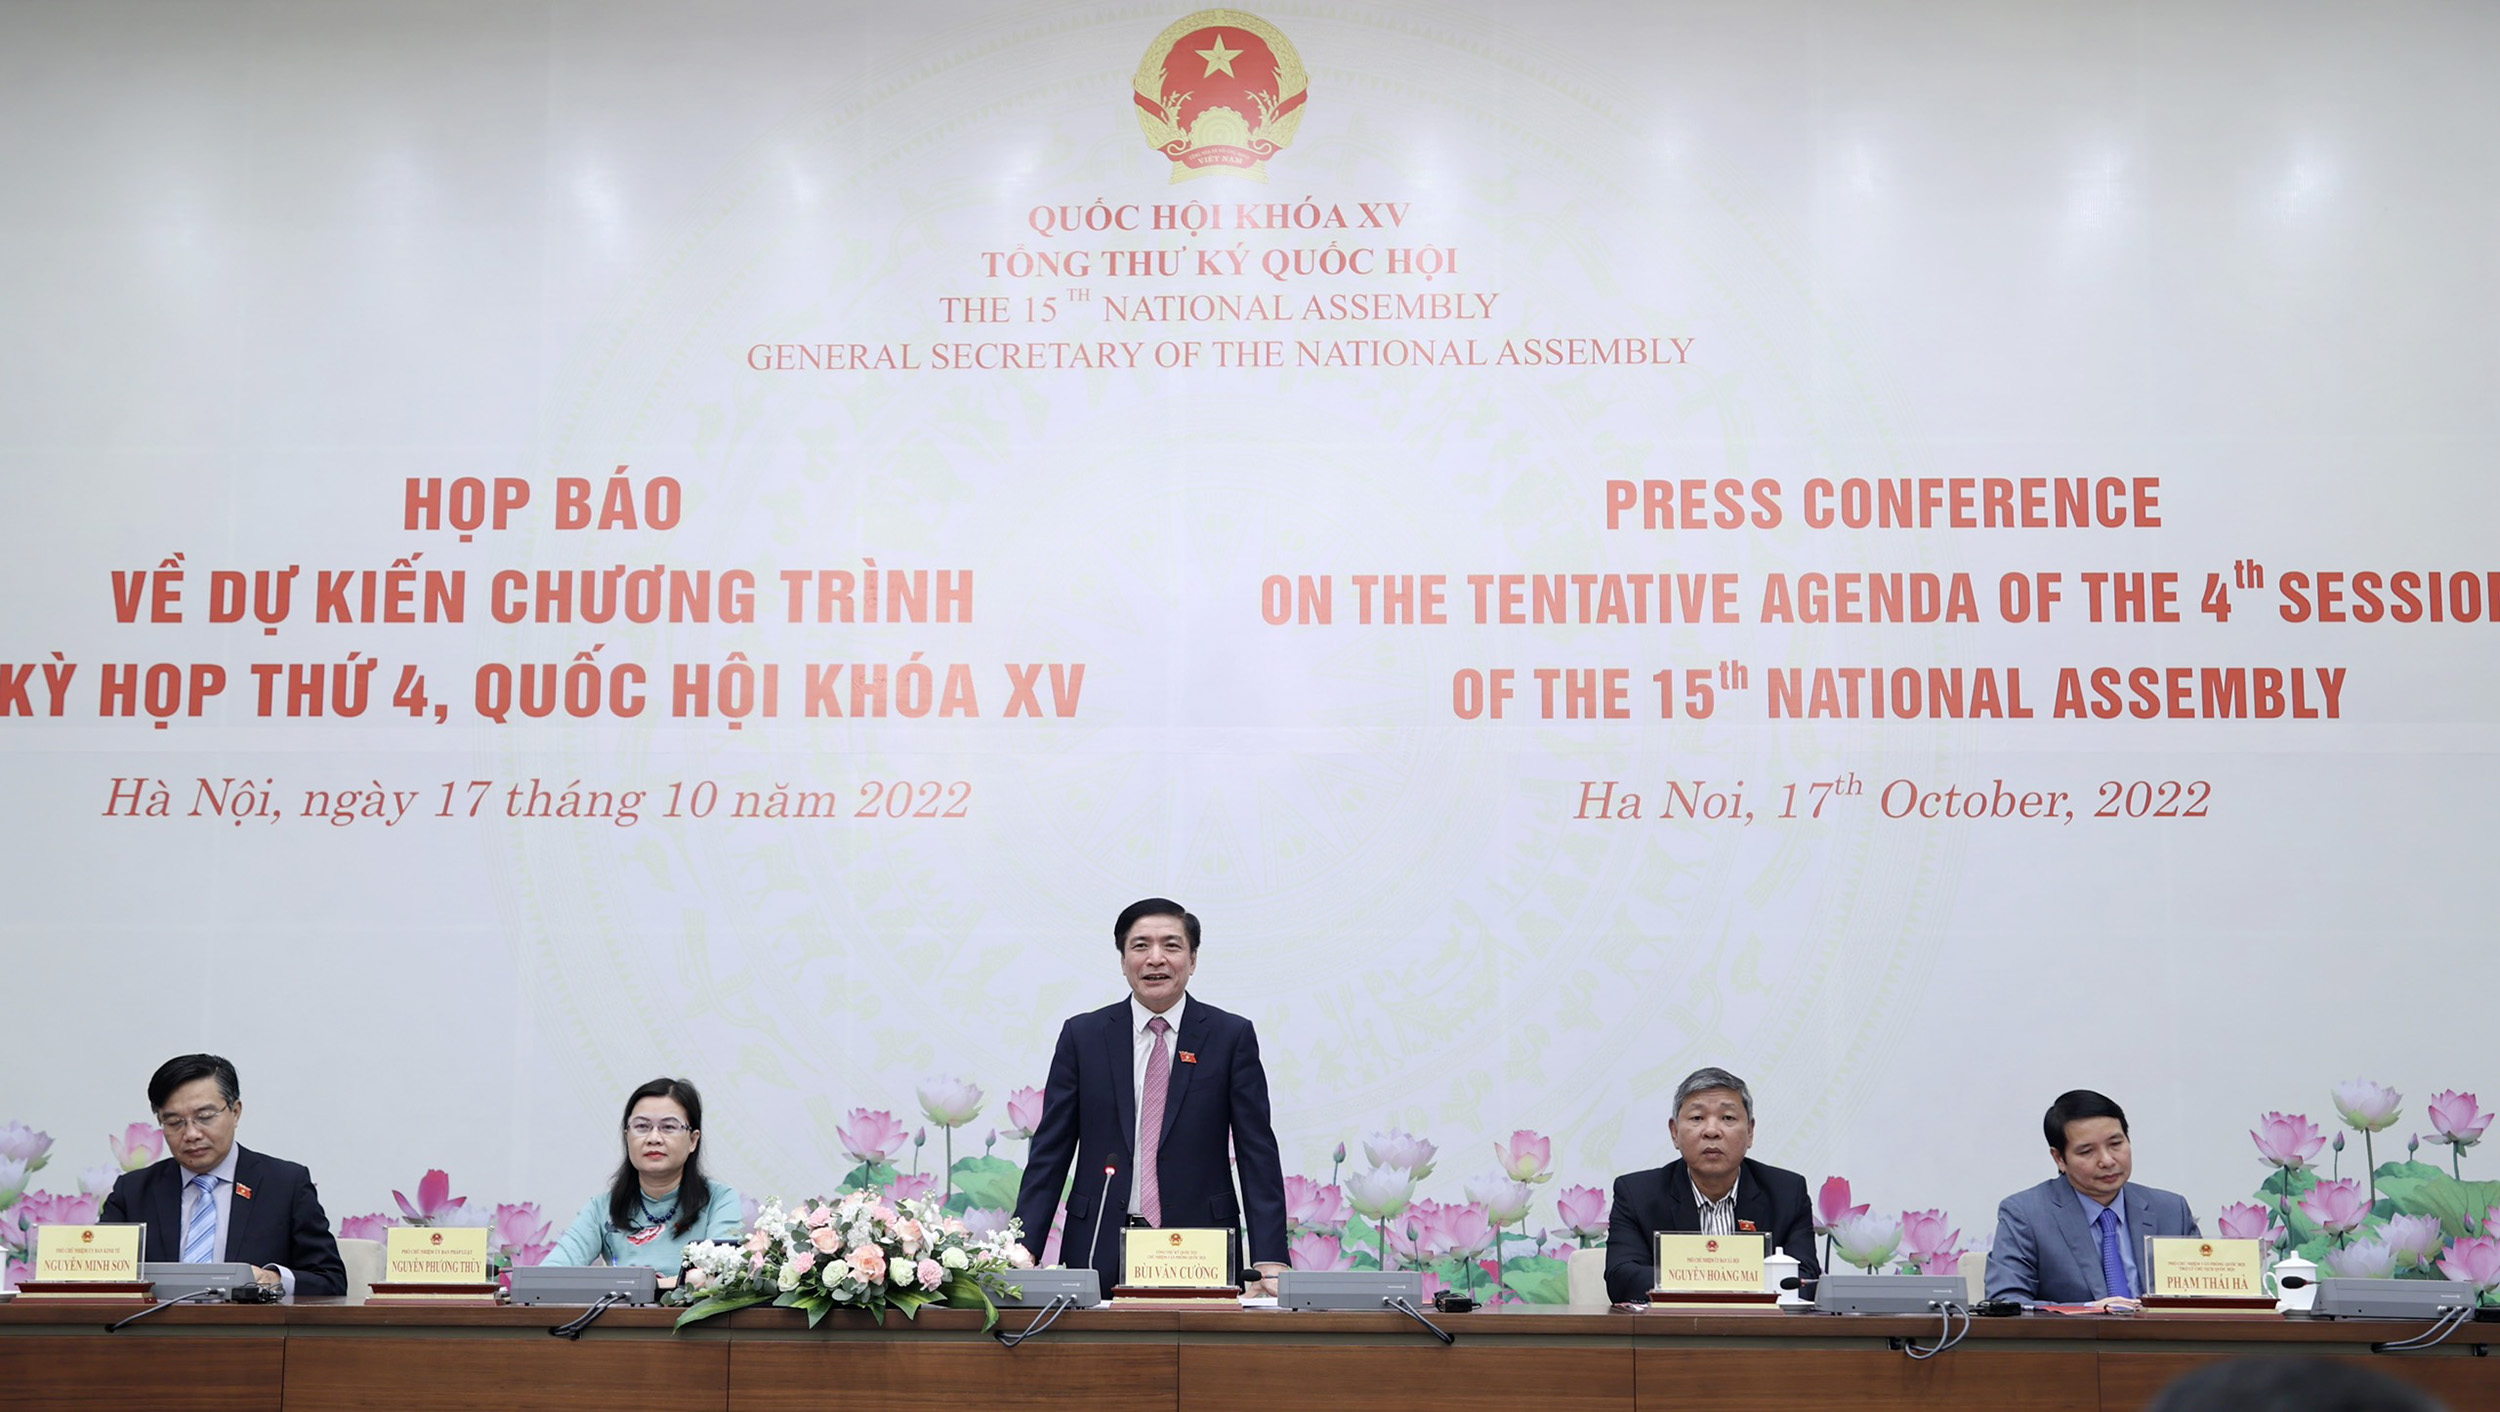 Quốc hội sẽ xem xét miễn nhiệm Bộ trưởng Bộ Giao thông vận tải Nguyễn Văn Thể tại Kỳ họp thứ 4 tới